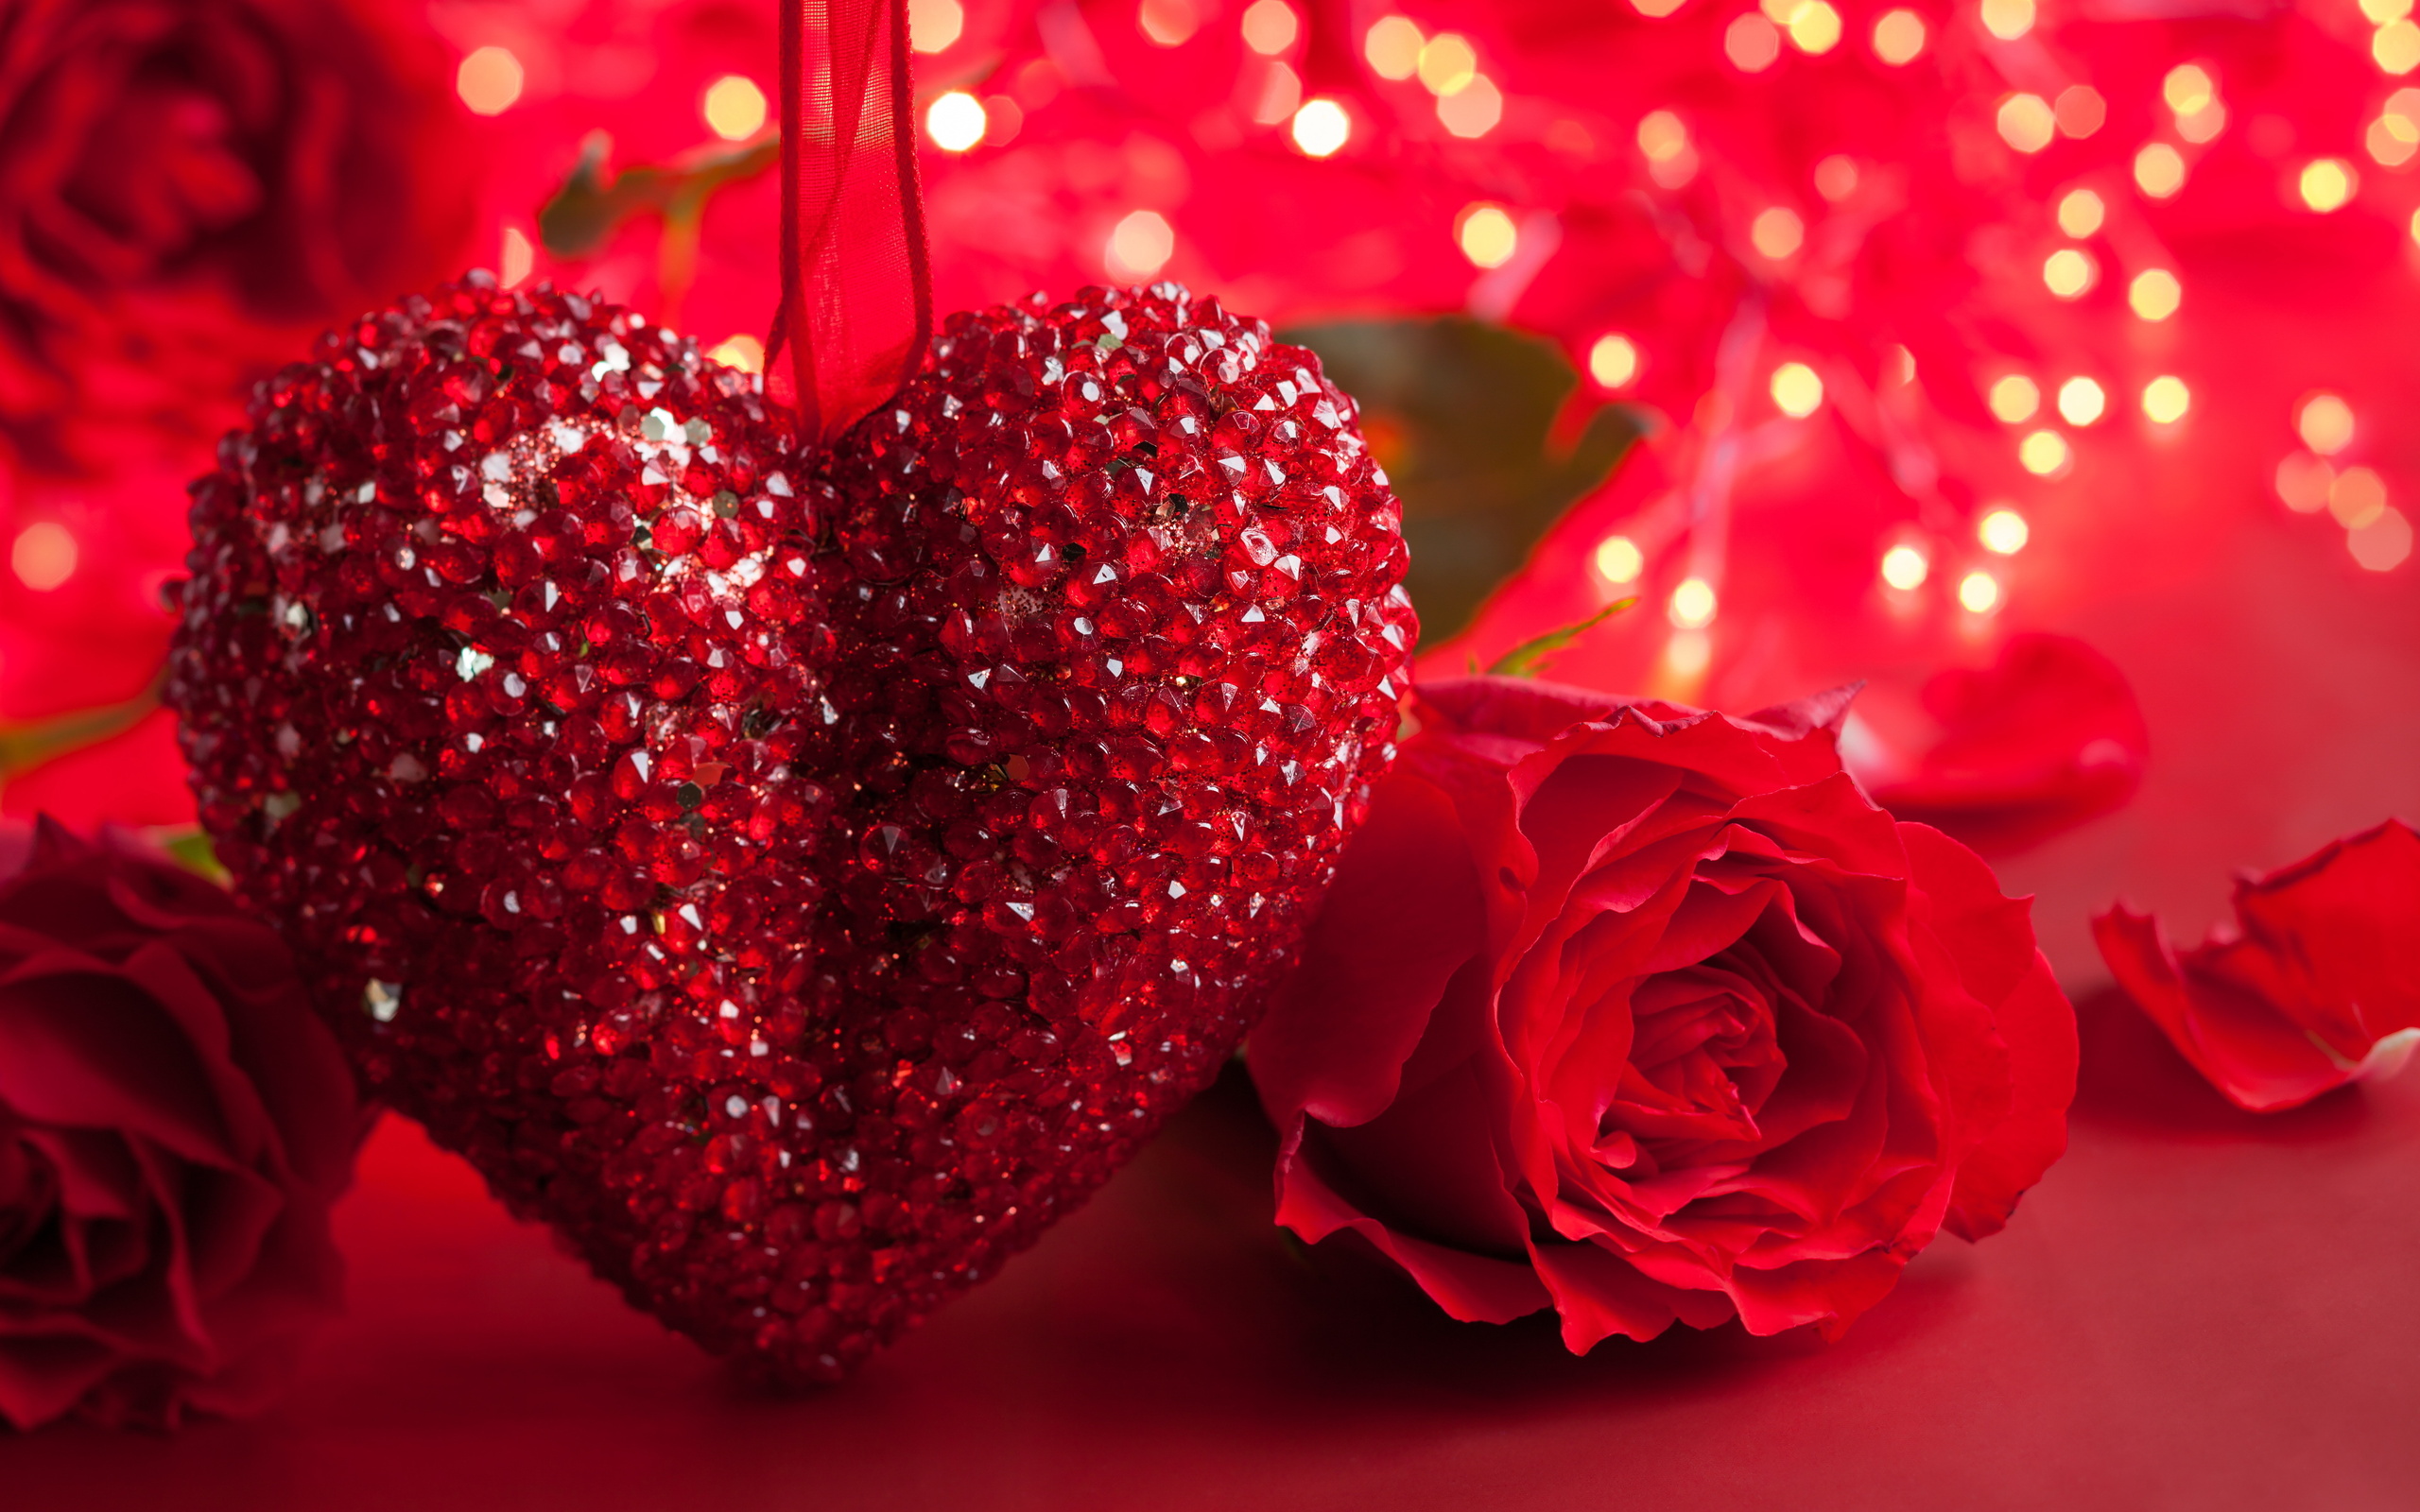 блестящее сердце, красные розы, красный фон, яркие красивые обои, Shiny heart, red roses, red background, bright beautiful wallpaper